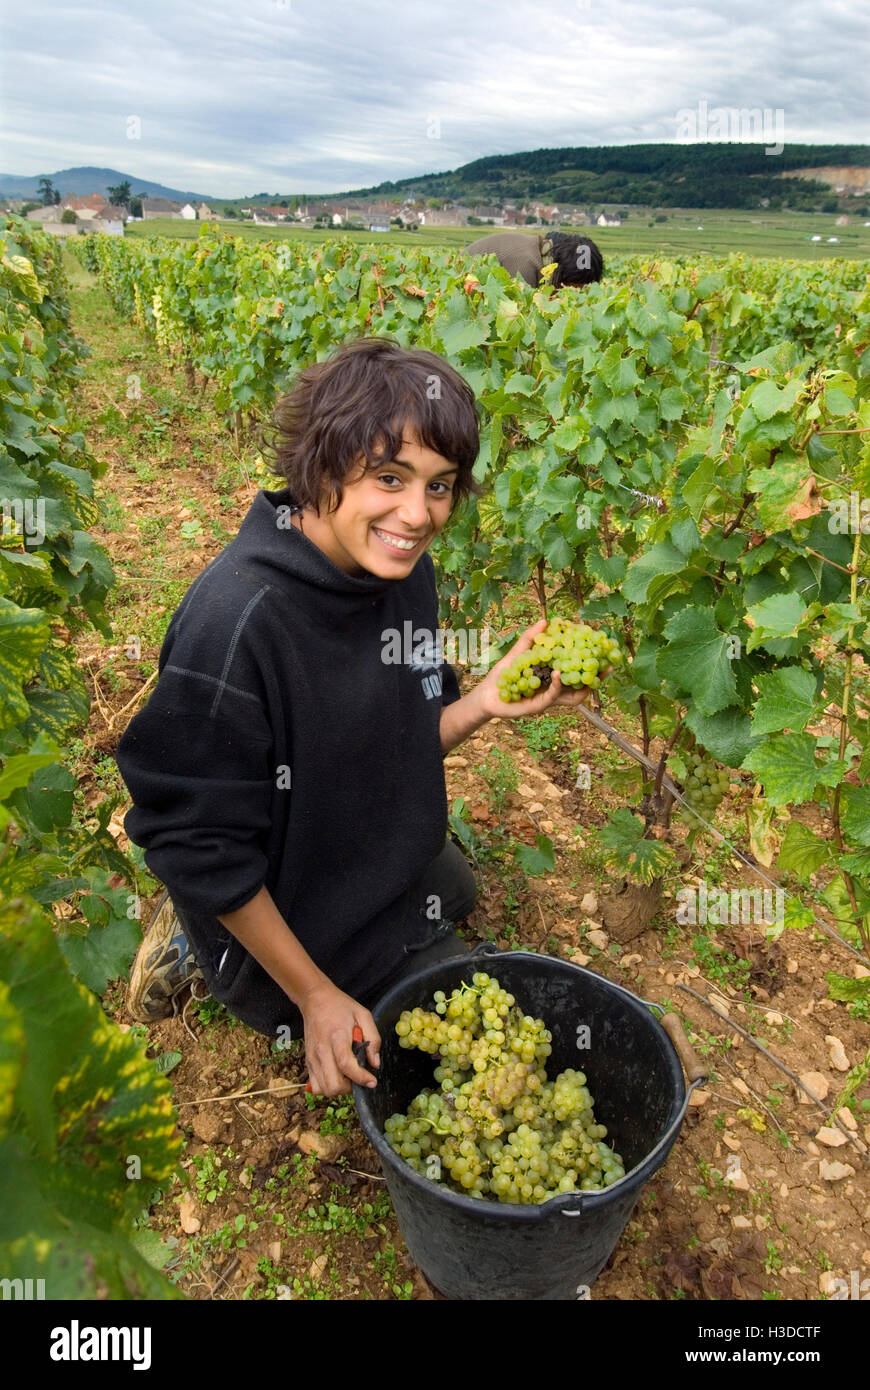 MONTRACHET Grand Cru raccoglitrice di uva lavorando nel Domaine Leflaive pacco di Le Montrachet vigna Puligny-Montrachet, Cote d'Or, Borgogna, Francia. Foto Stock